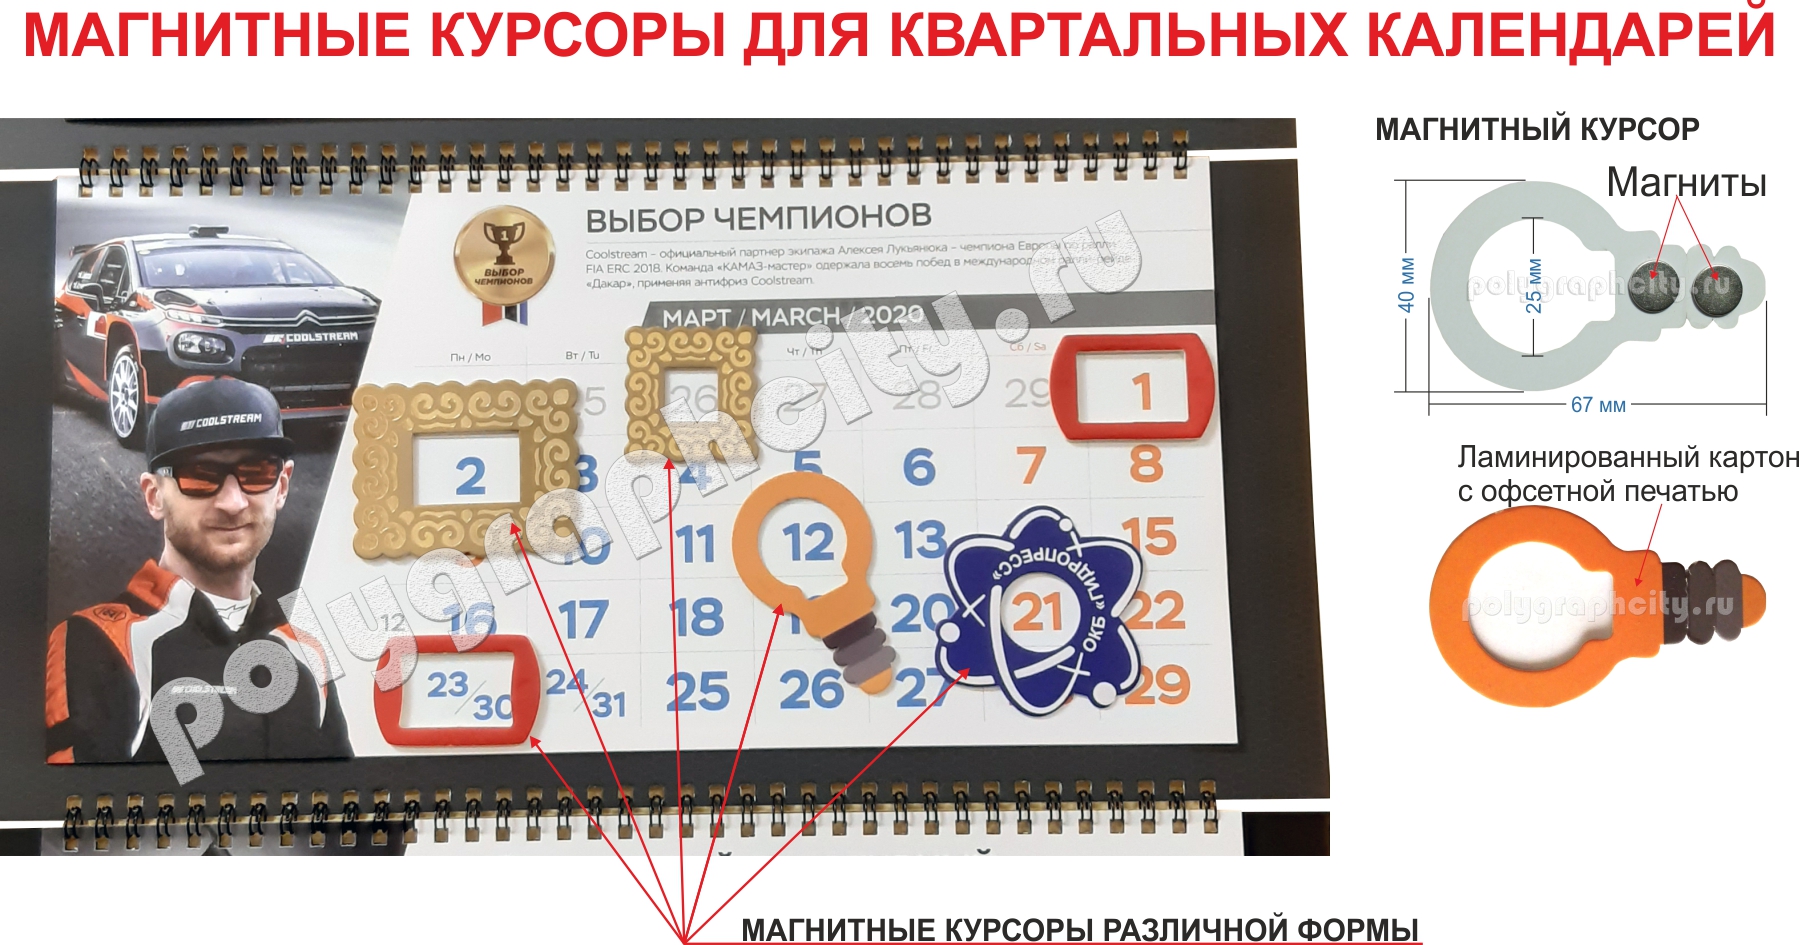 Фото - фрагмент квартального календаря с магнитными курсорами различной формы